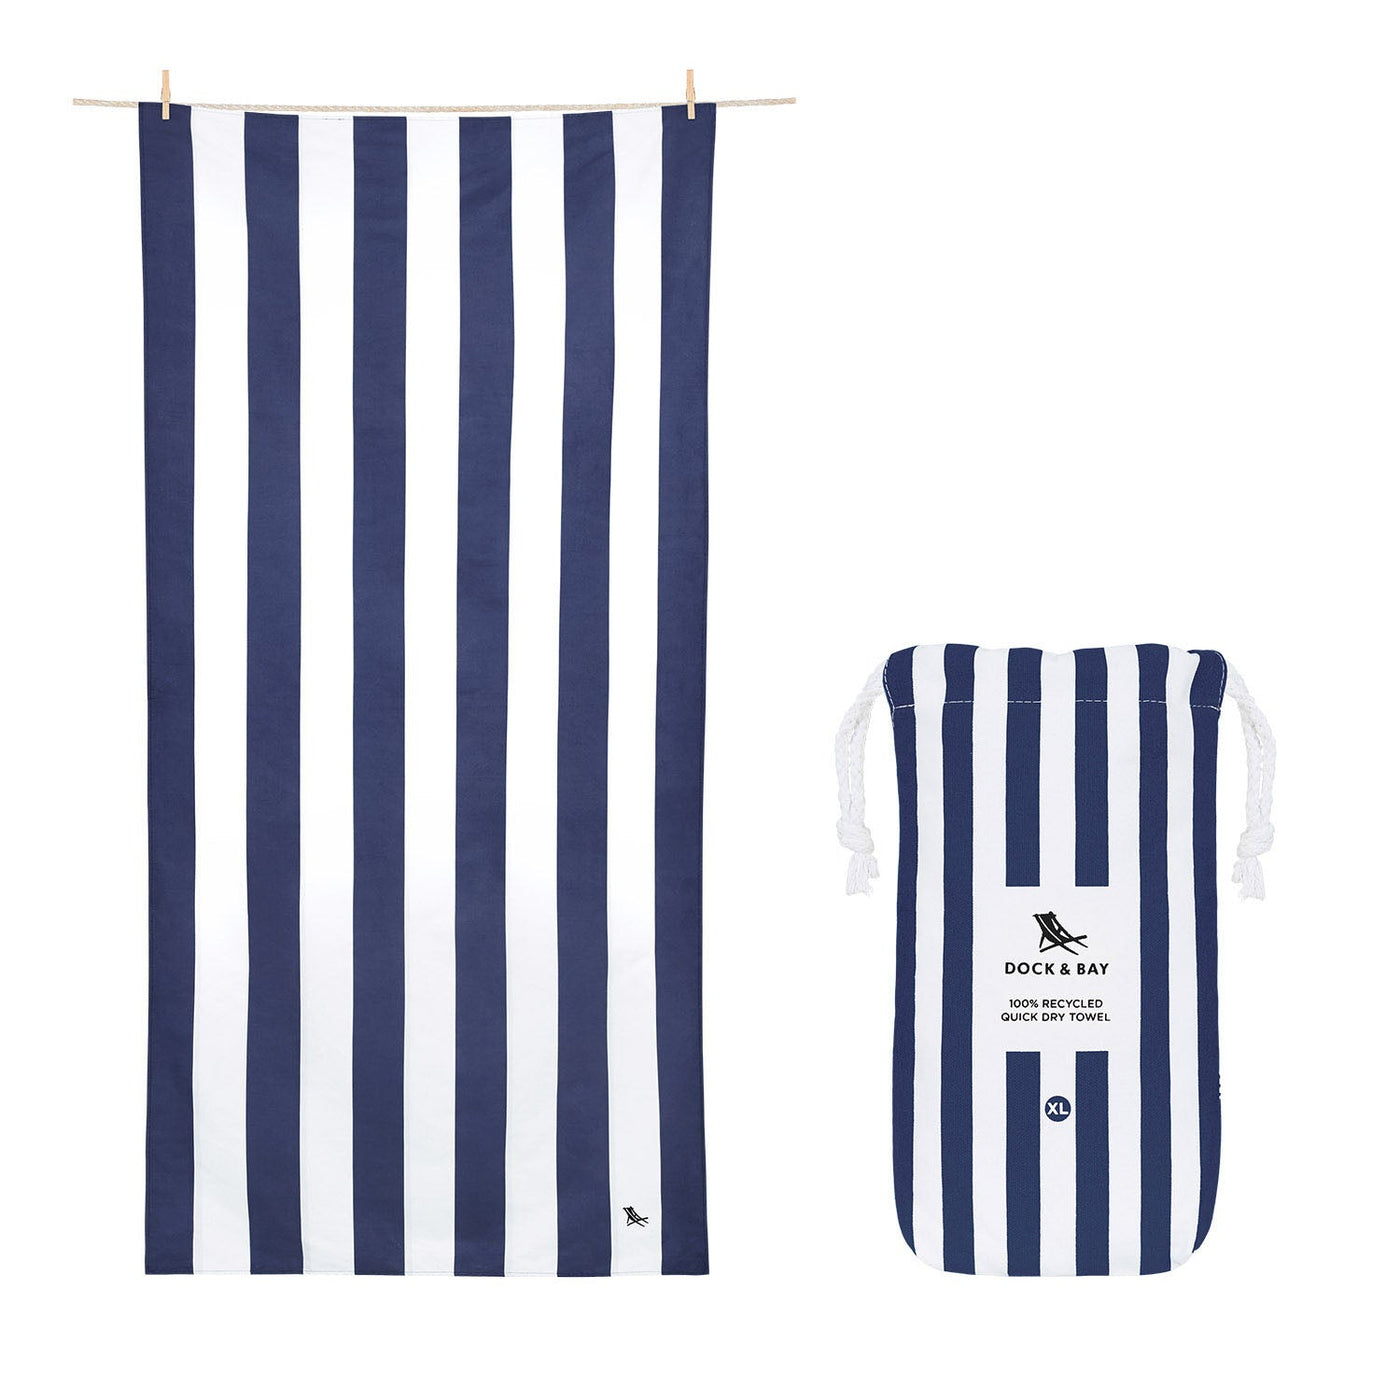 Dock & Bay - XL Cabana Towel - Whitsunday Blue